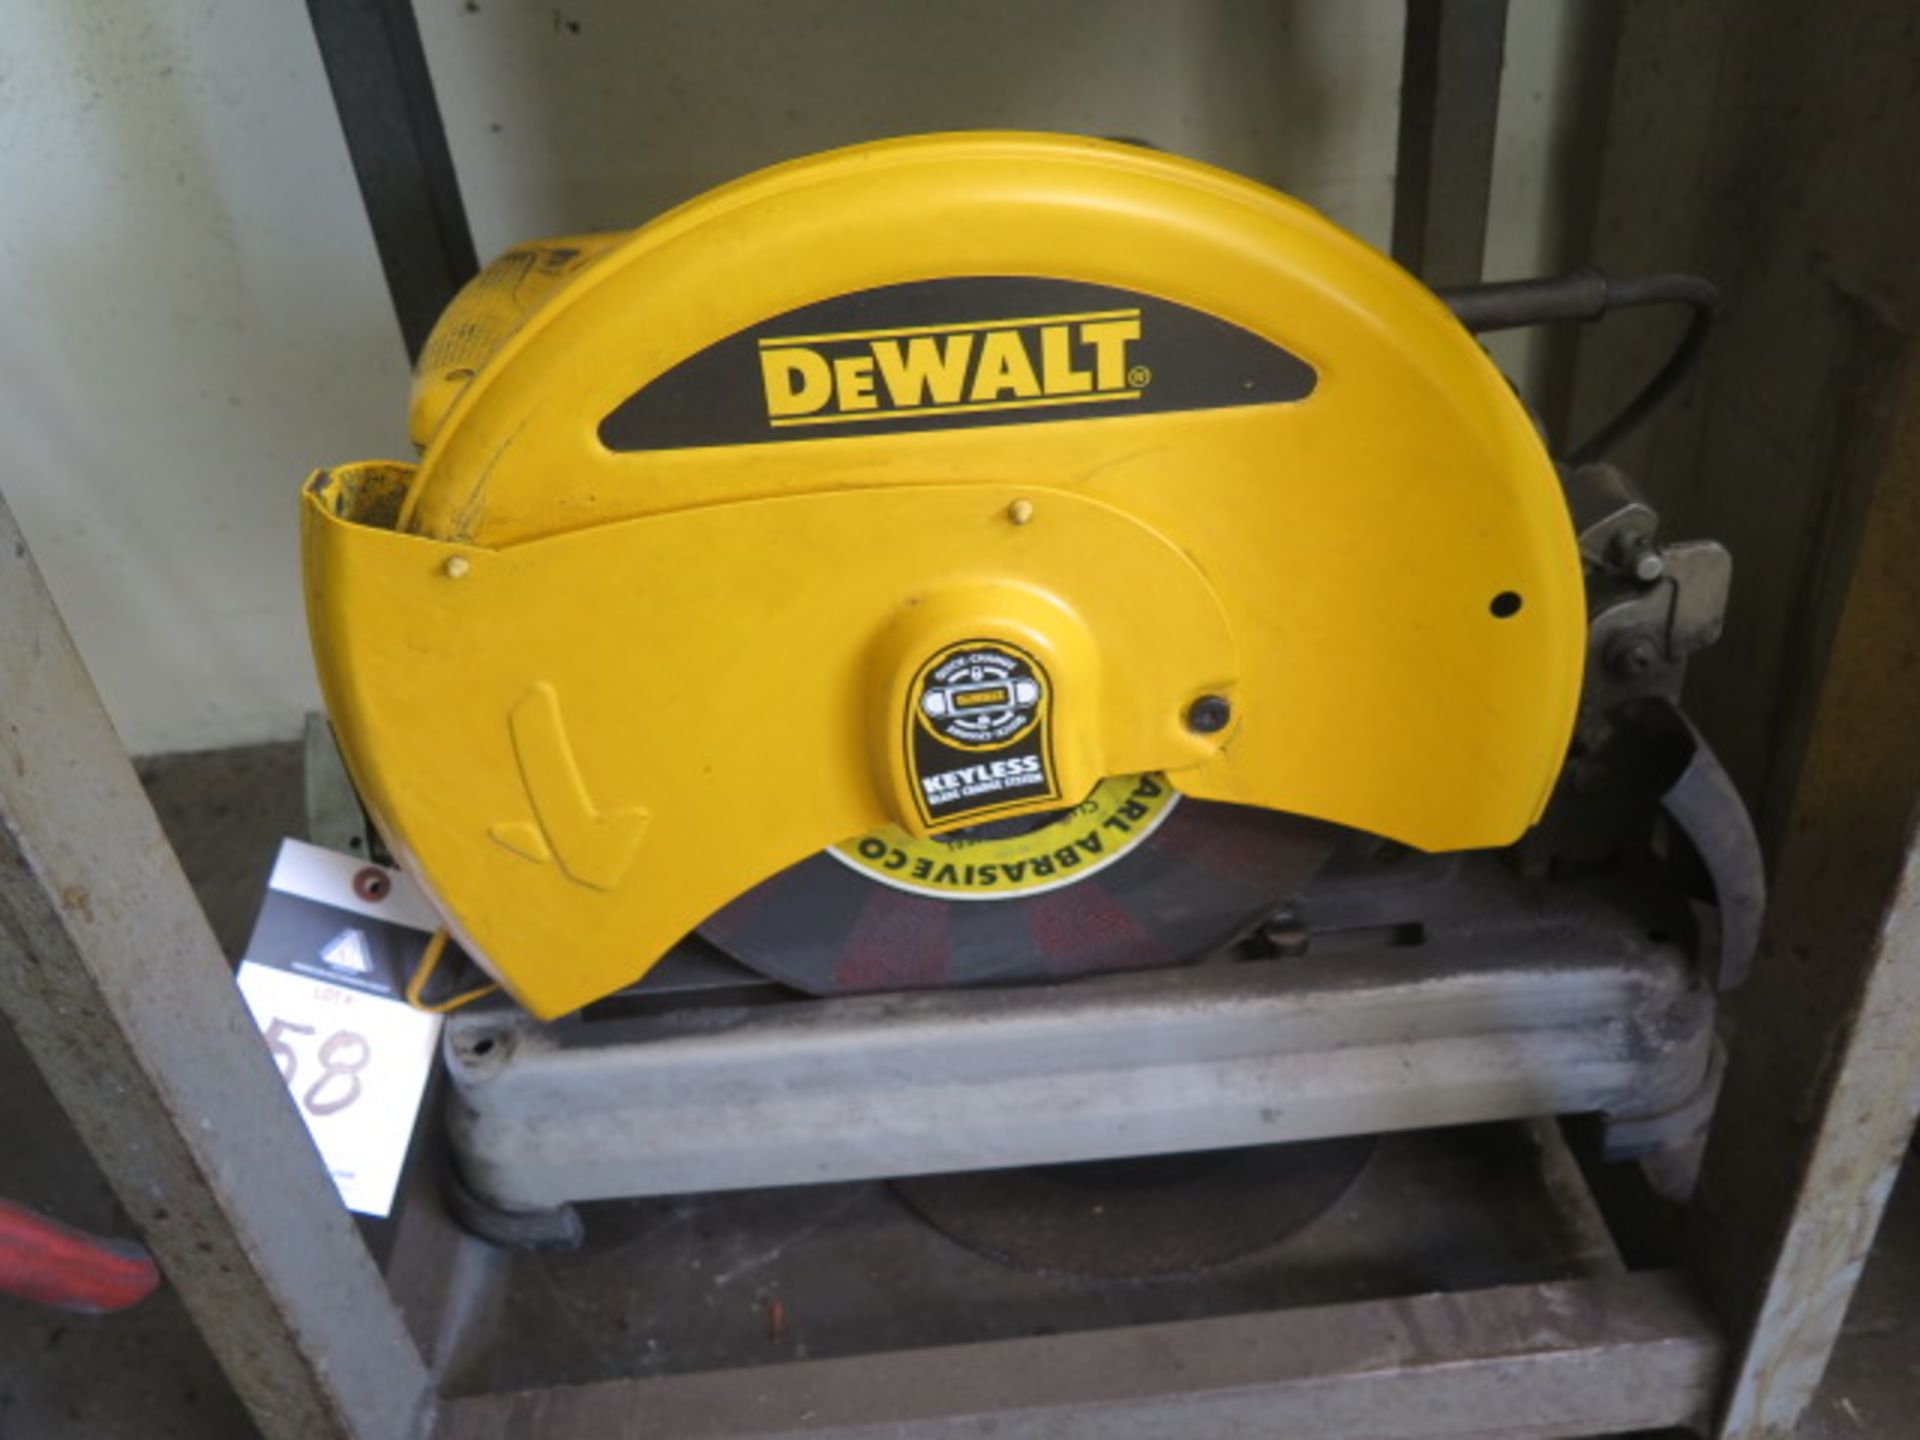 DeWalt 14” Abrasive Cutoff Saw